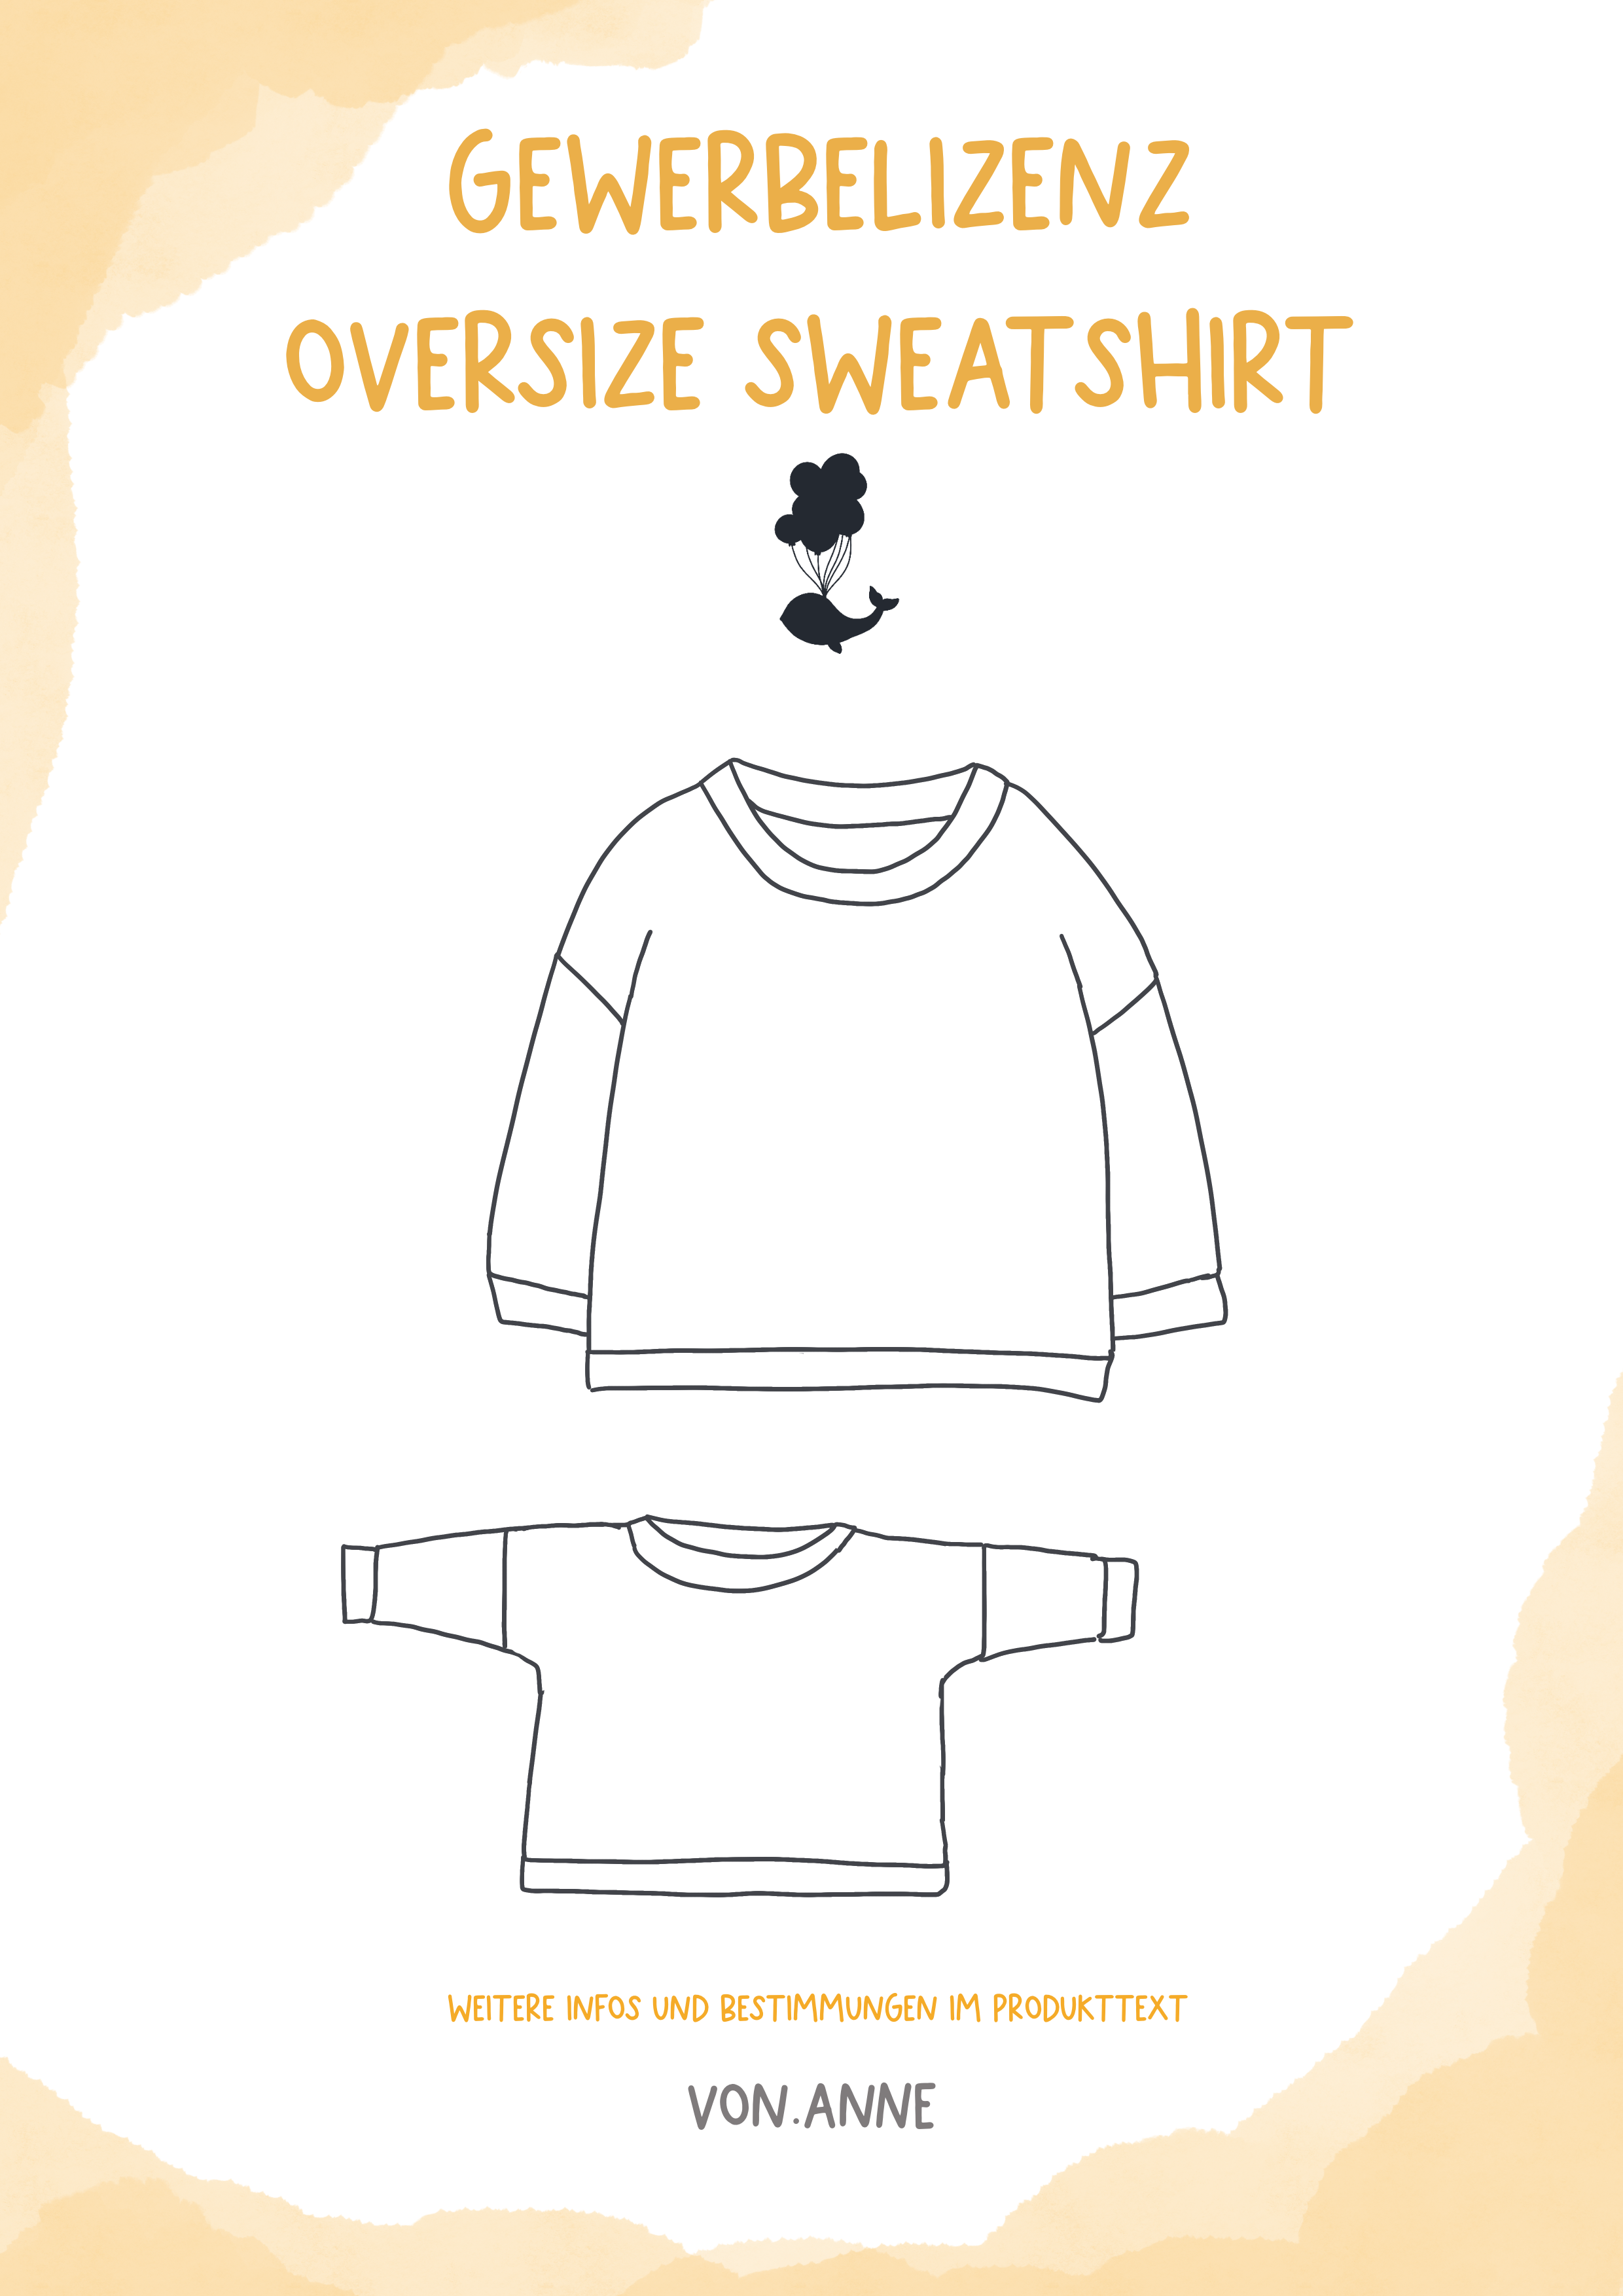 Gewerbelizenz - Oversize Sweatshirt